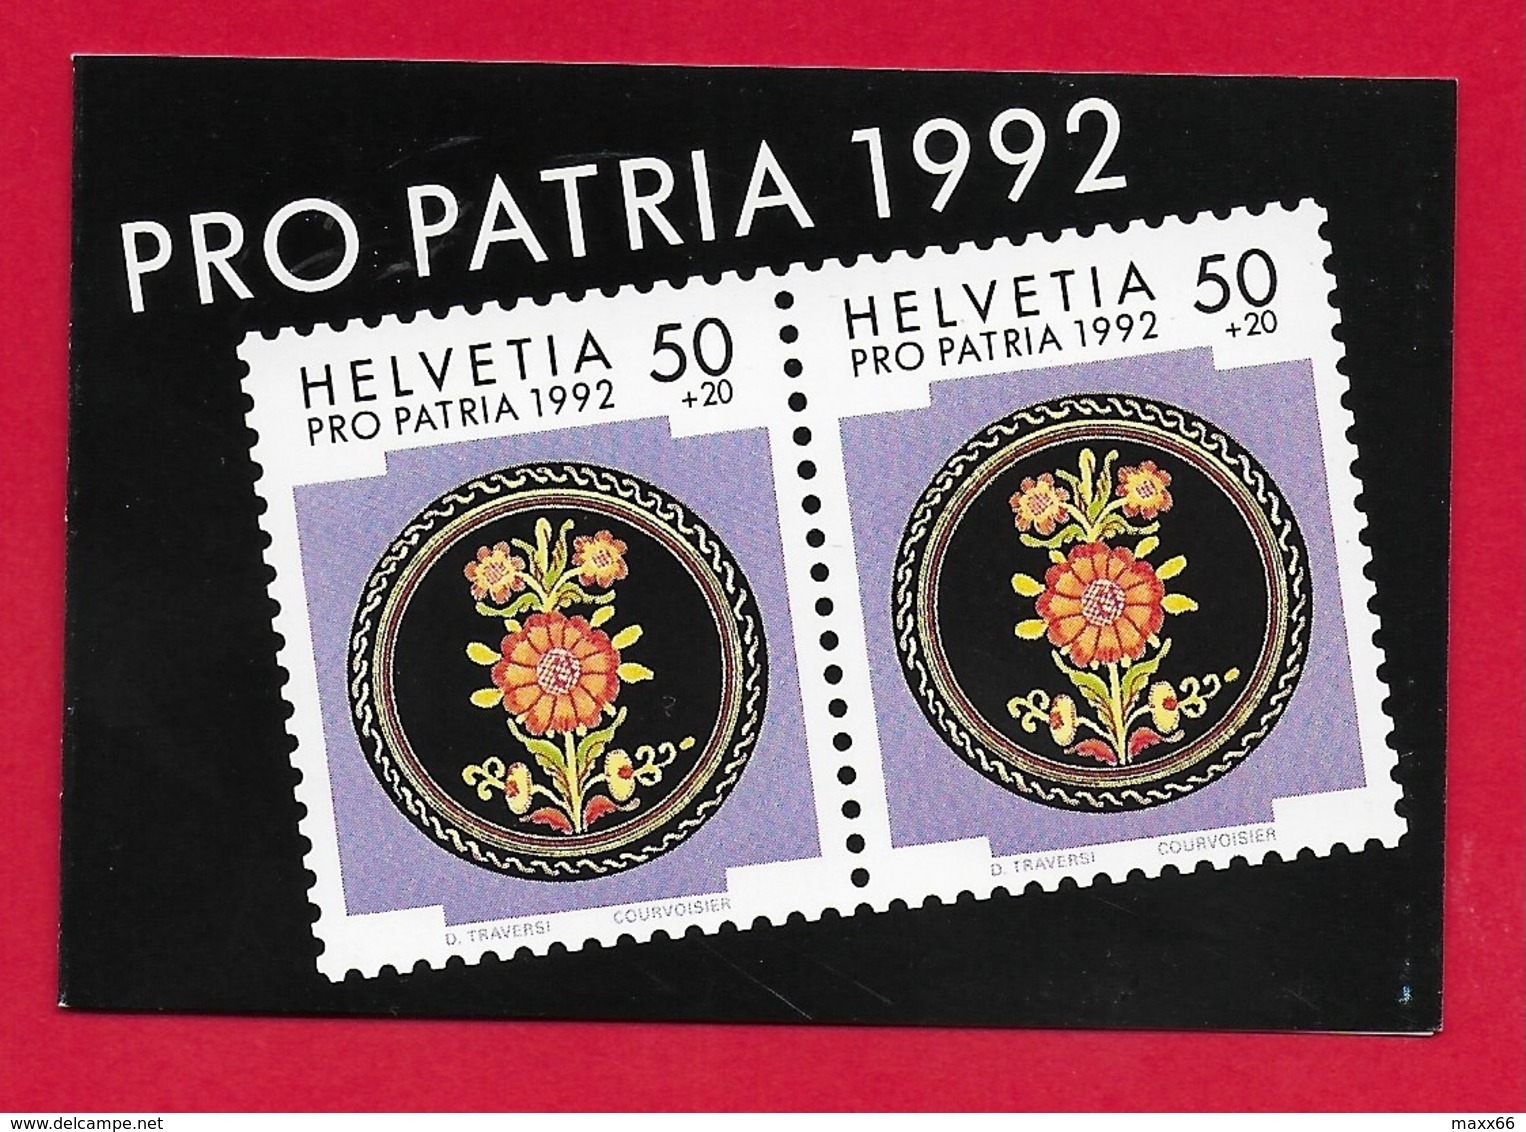 LIBRETTO SVIZZERA MNH - PRO PATRIA 1992 - 10 X 50 + 20 Cent. - Nuovi